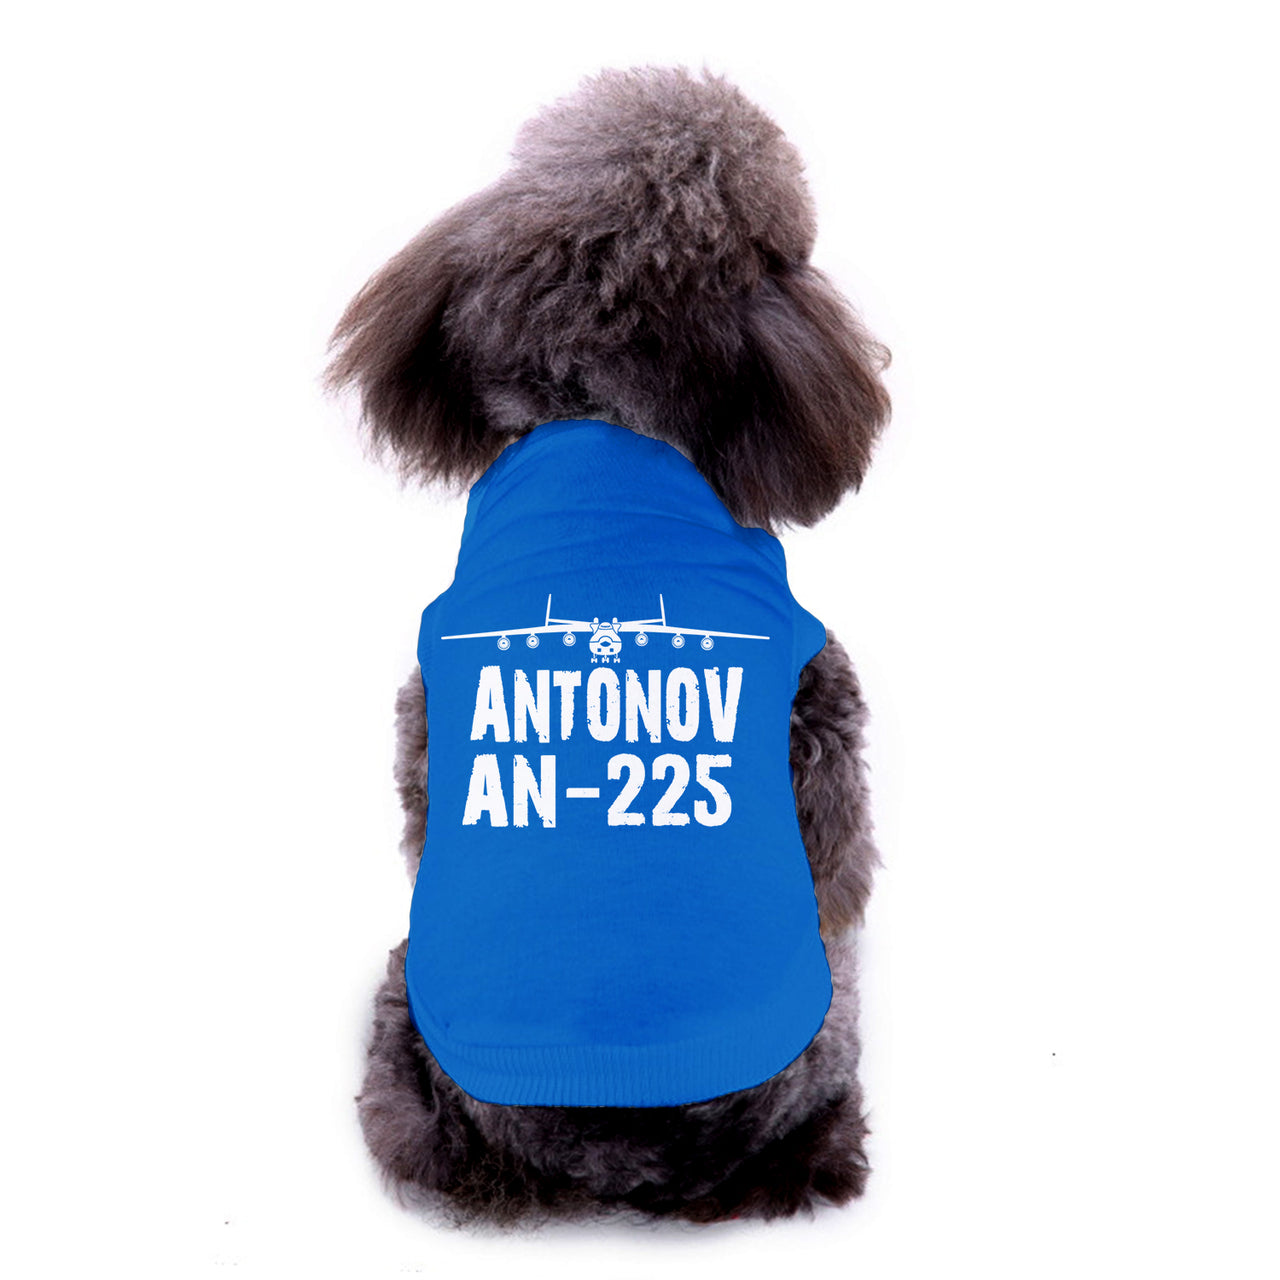 Antonov AN-225 & Plane Designed Dog Pet Vests